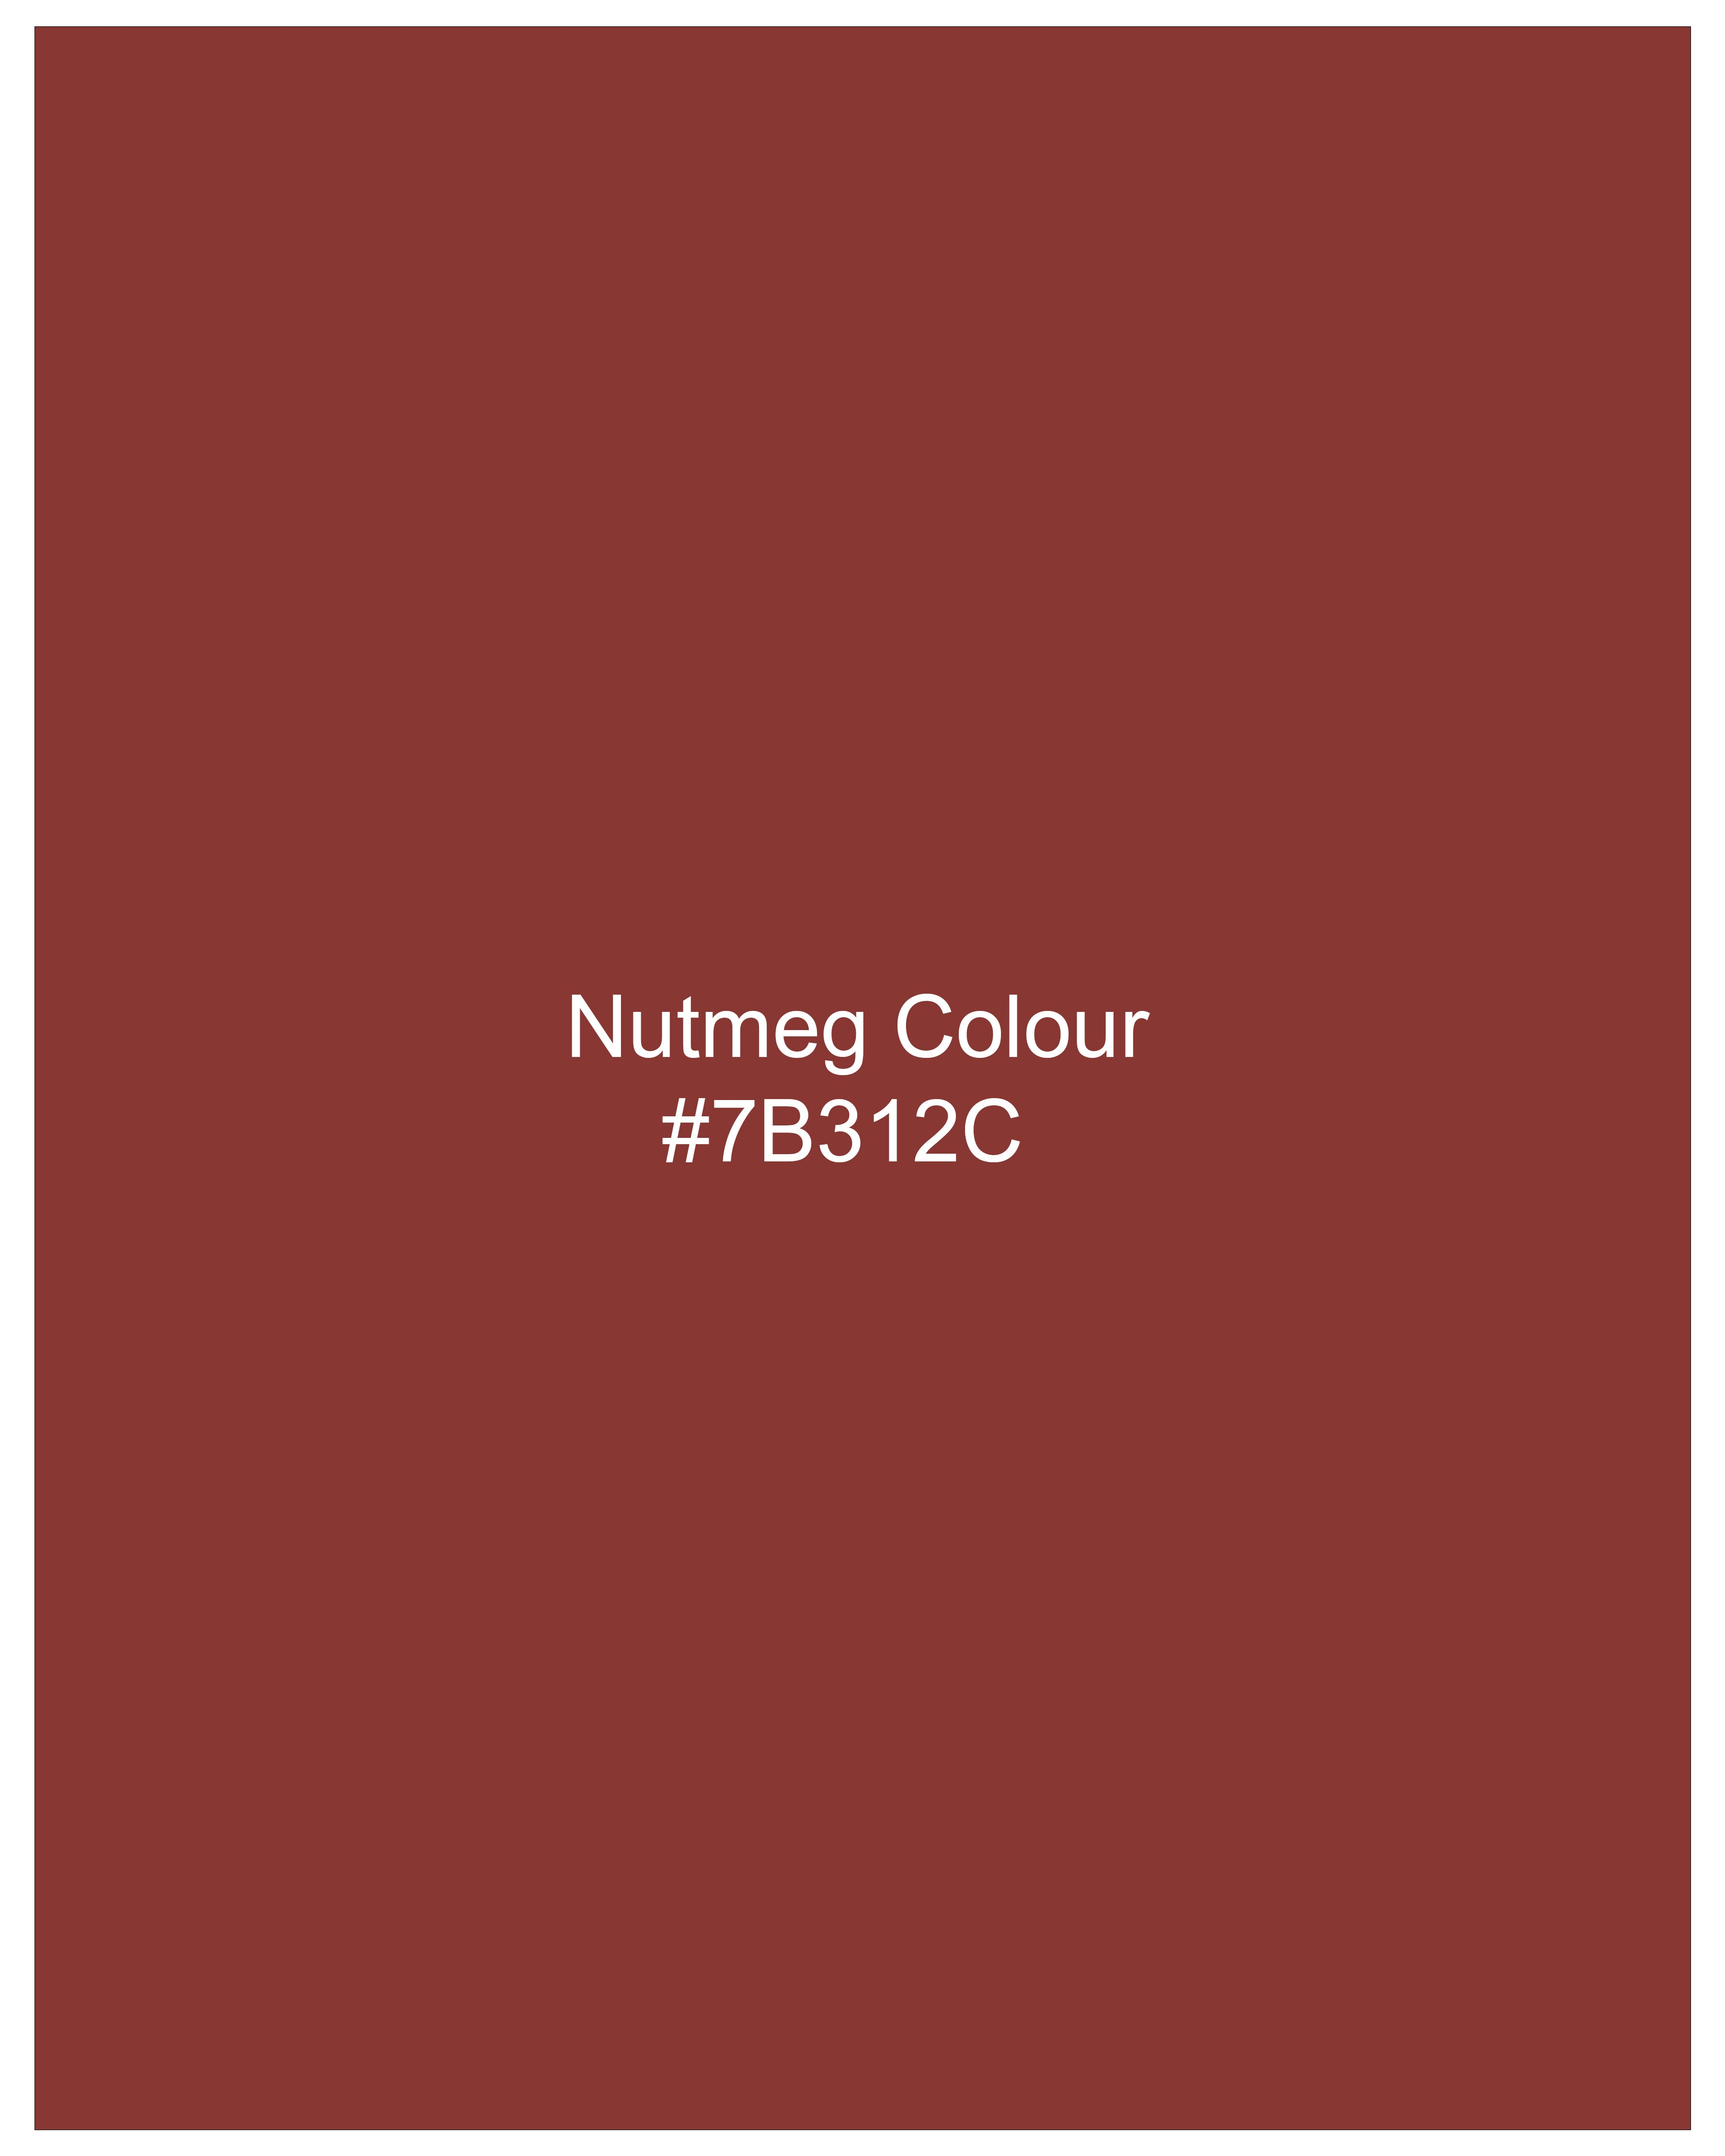 Nutmeg Red Tweed Pant T2695-28, T2695-30, T2695-32, T2695-34, T2695-36, T2695-38, T2695-40, T2695-42, T2695-44